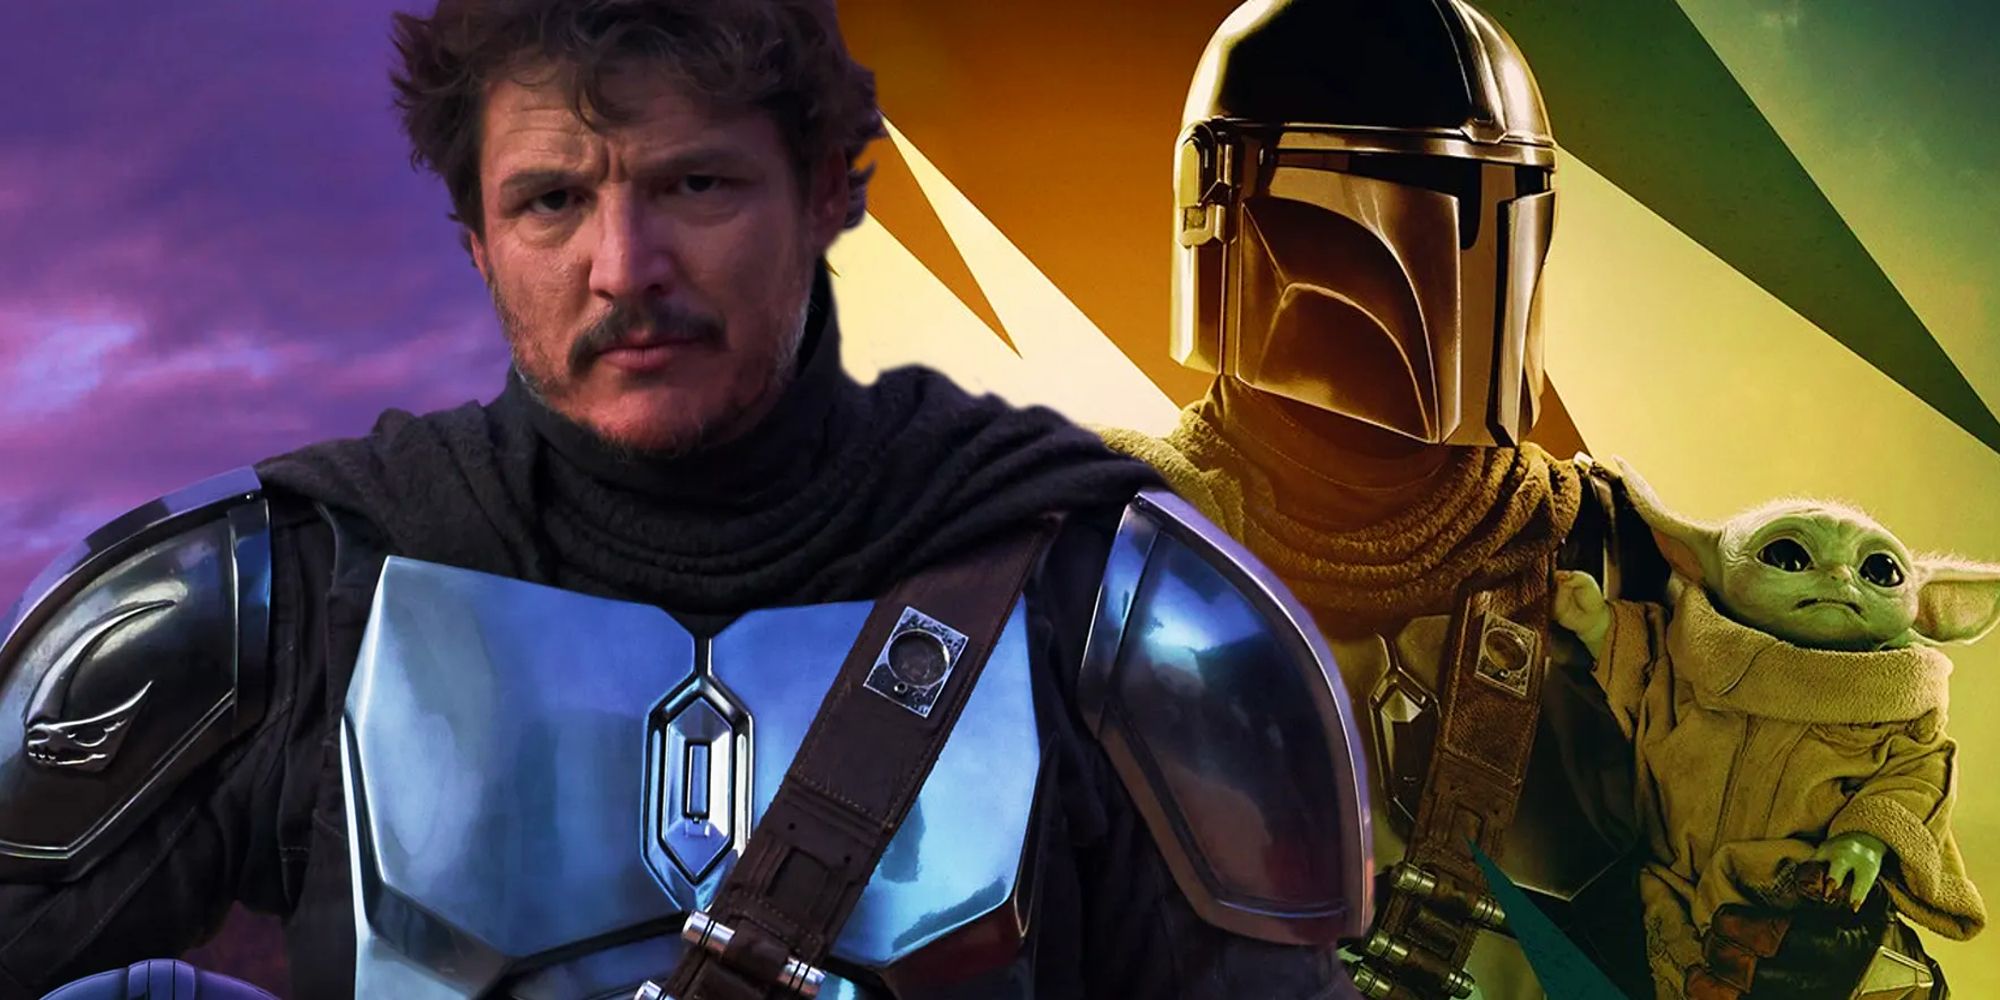 "Nunca volveremos a ver al mandaloriano sin casco": los fanáticos de Star Wars reaccionan al casting del MCU de Pedro Pascal